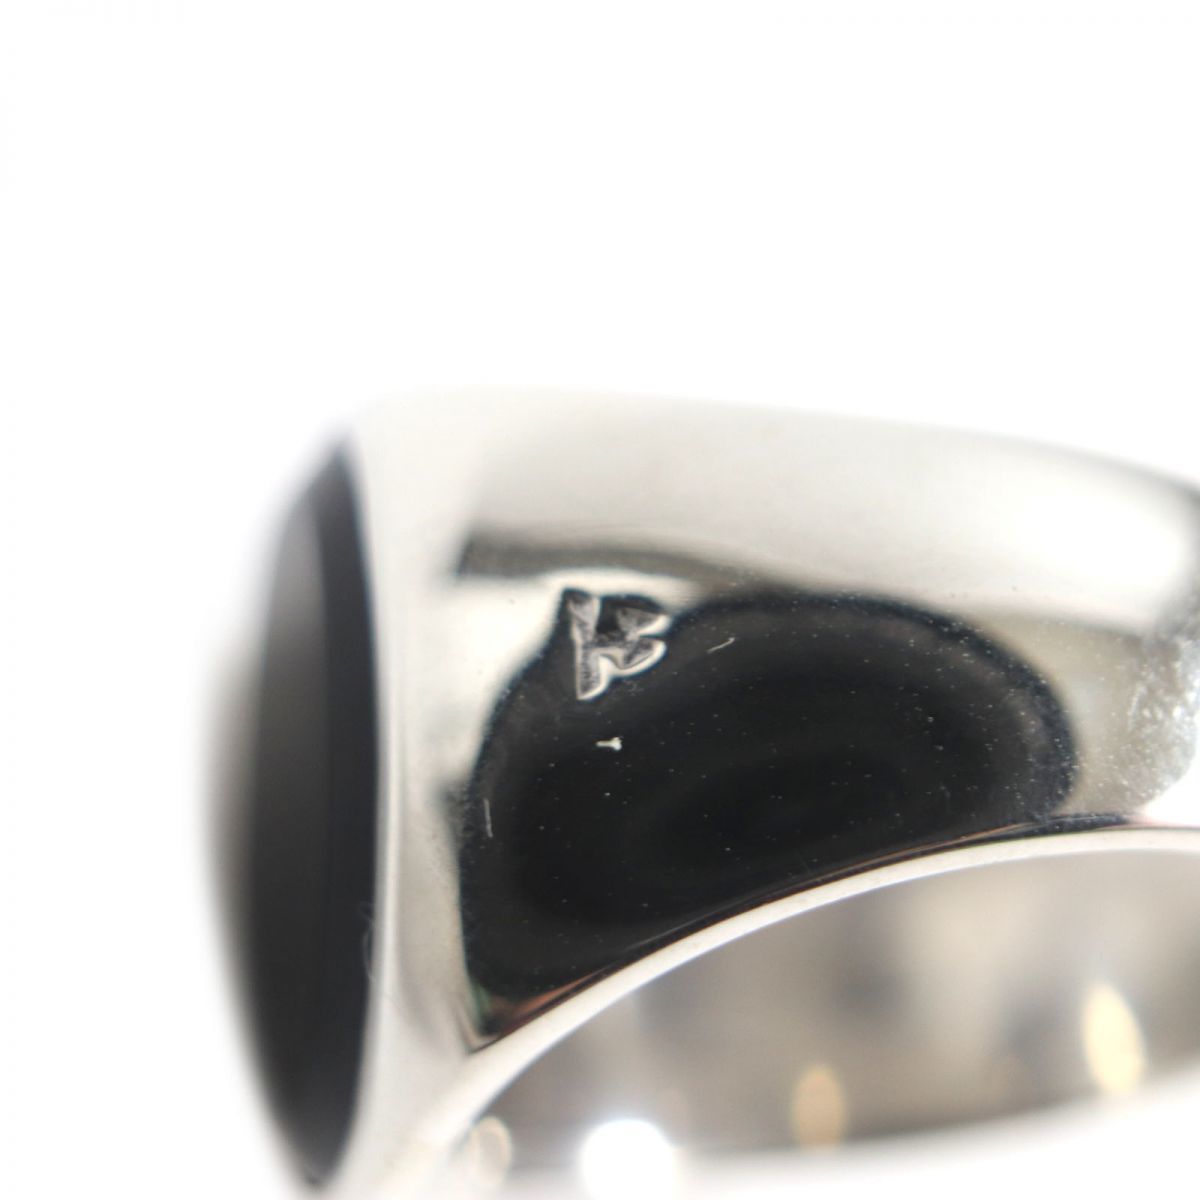  превосходный товар VTOM WOOD Tom дерево SV925× оникс кольцо / кольцо серебряный × черный 52(12 номер ) мужской масса 9.8g